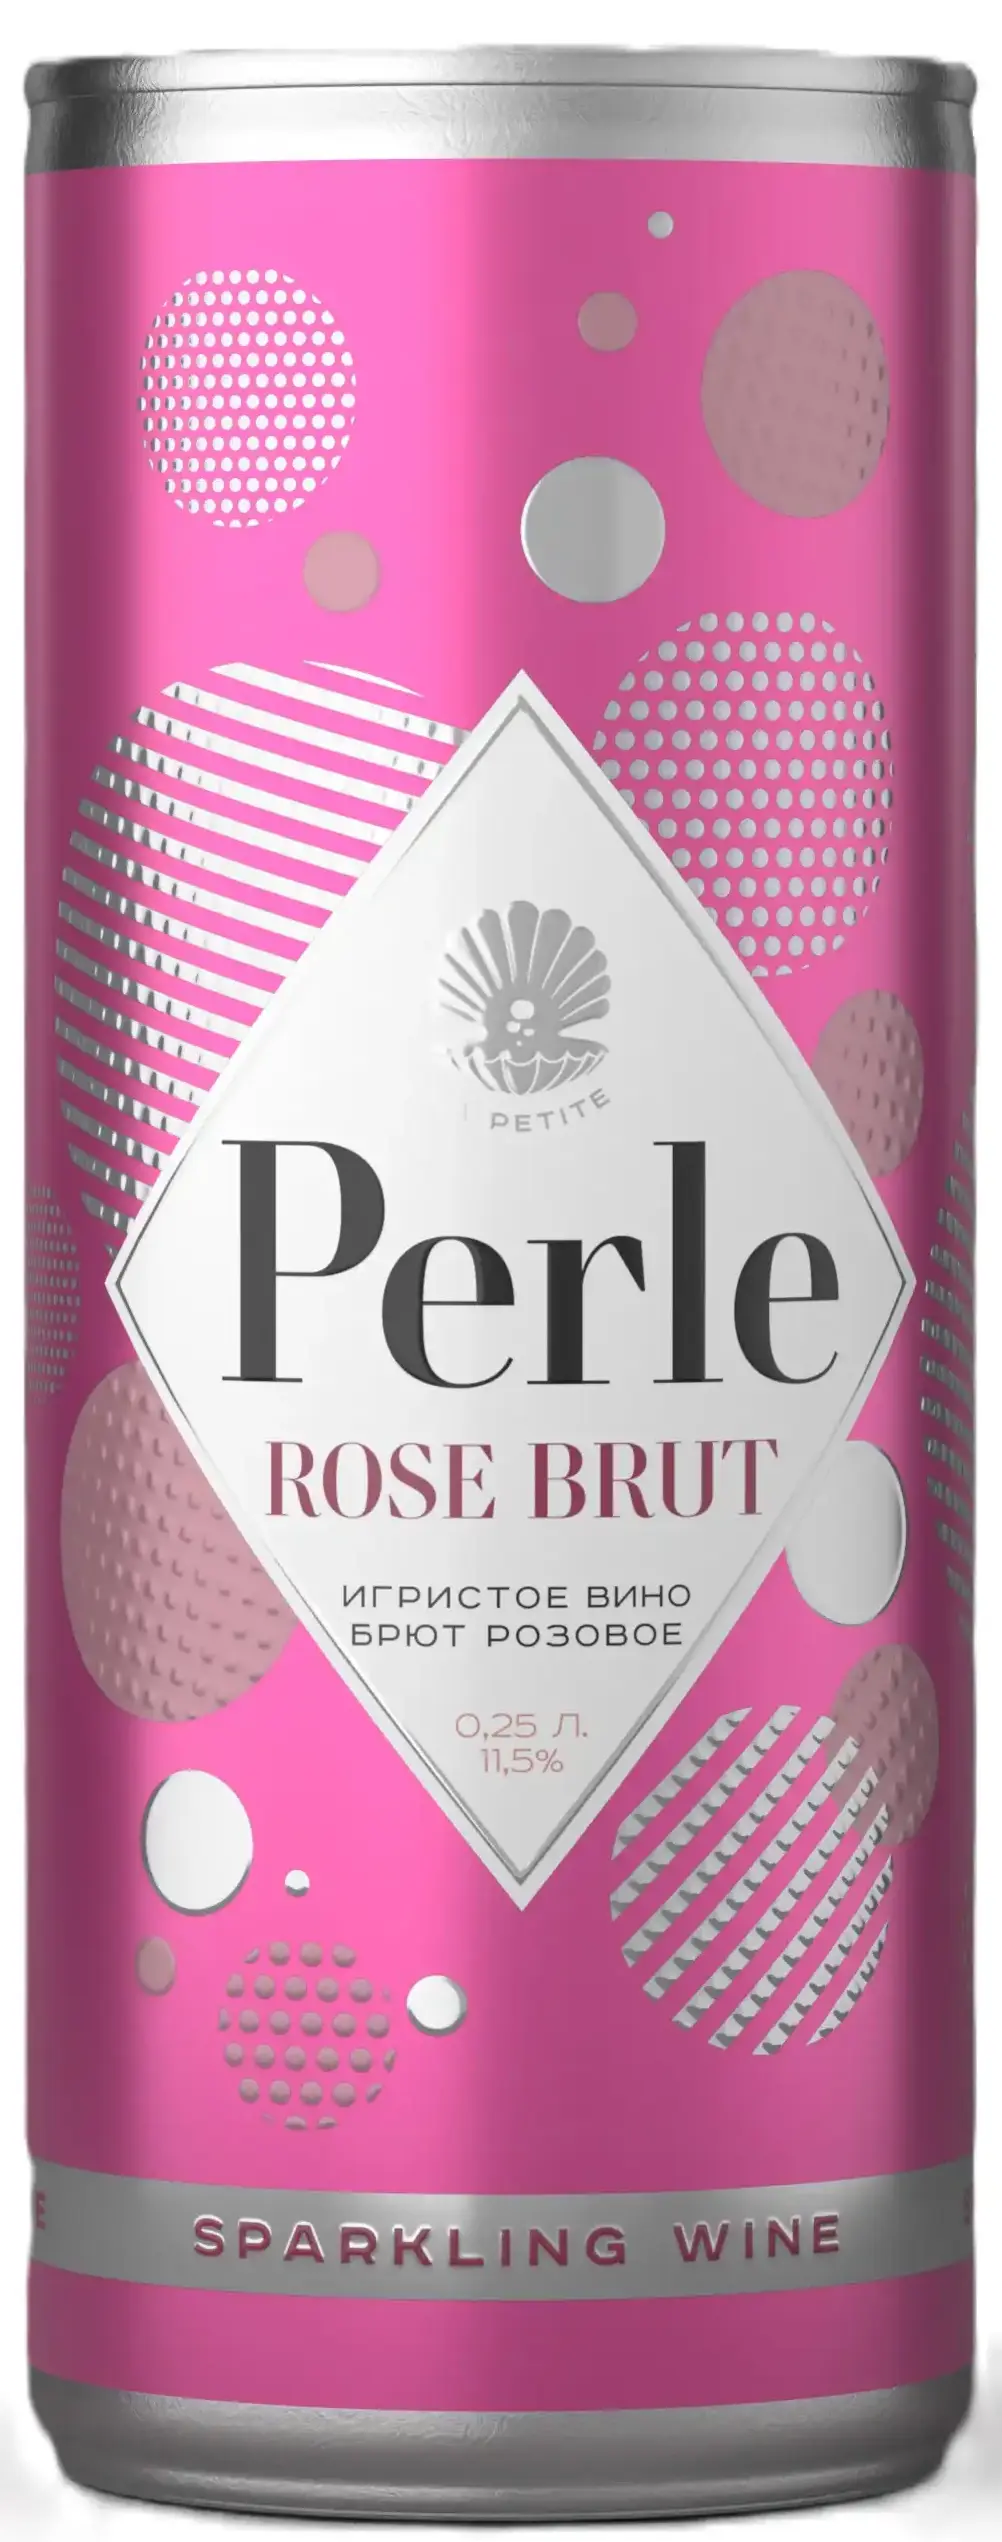 Вино игристое Ла Петит Перле розовое брют 11,5% 0,25 ж/б